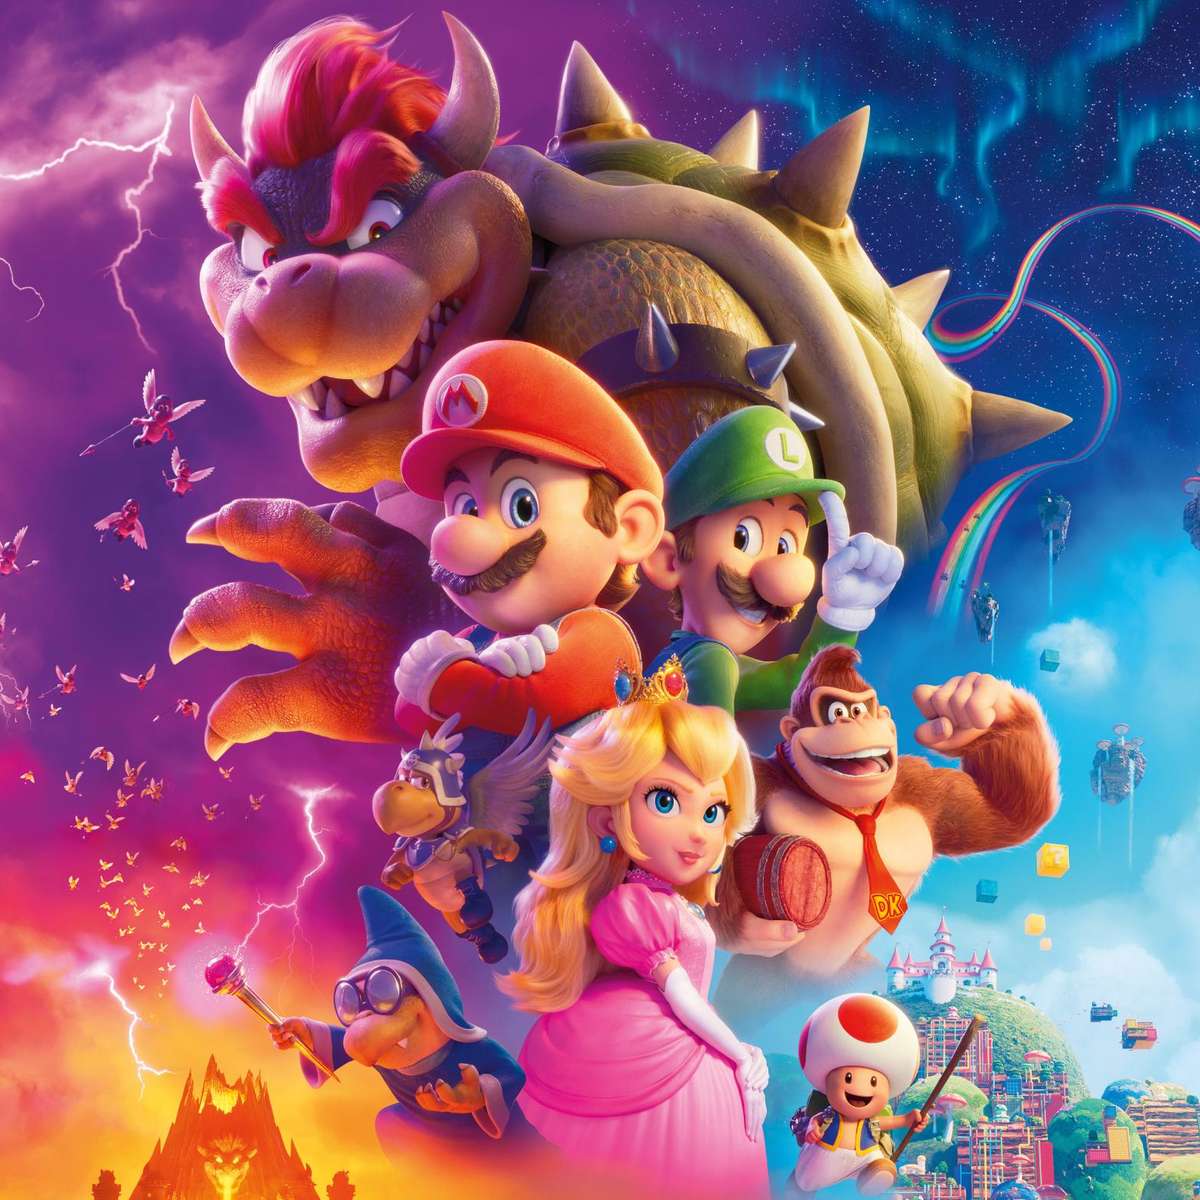 Personagens Mario: Quem é quem no Reino dos Cogumelos?